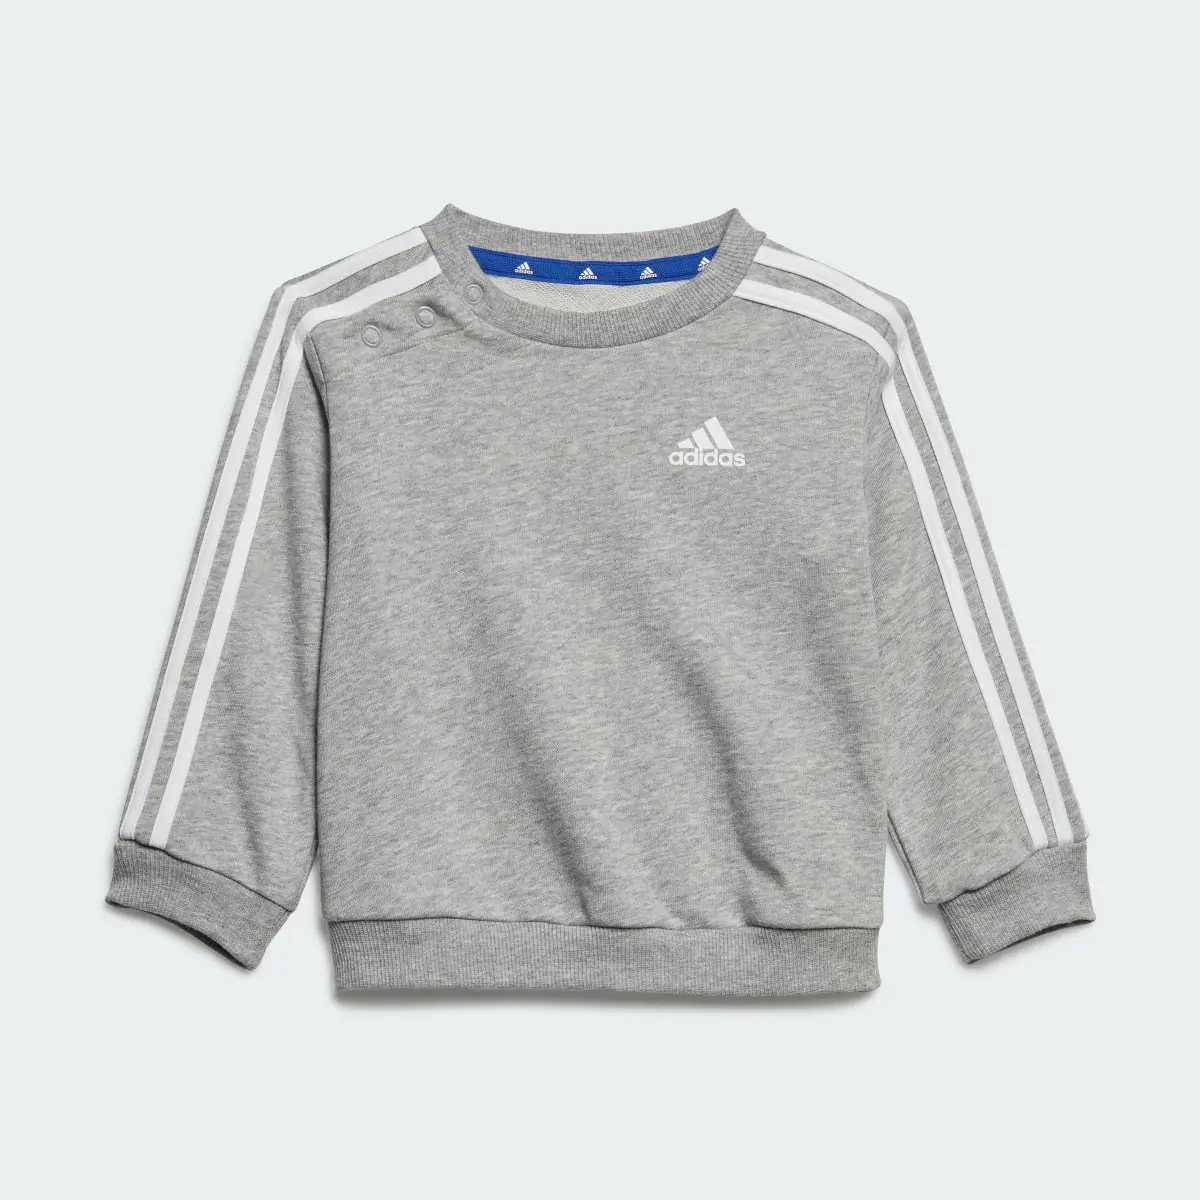 Adidas Tuta Essentials 3-Stripes Jogger Infant. 3